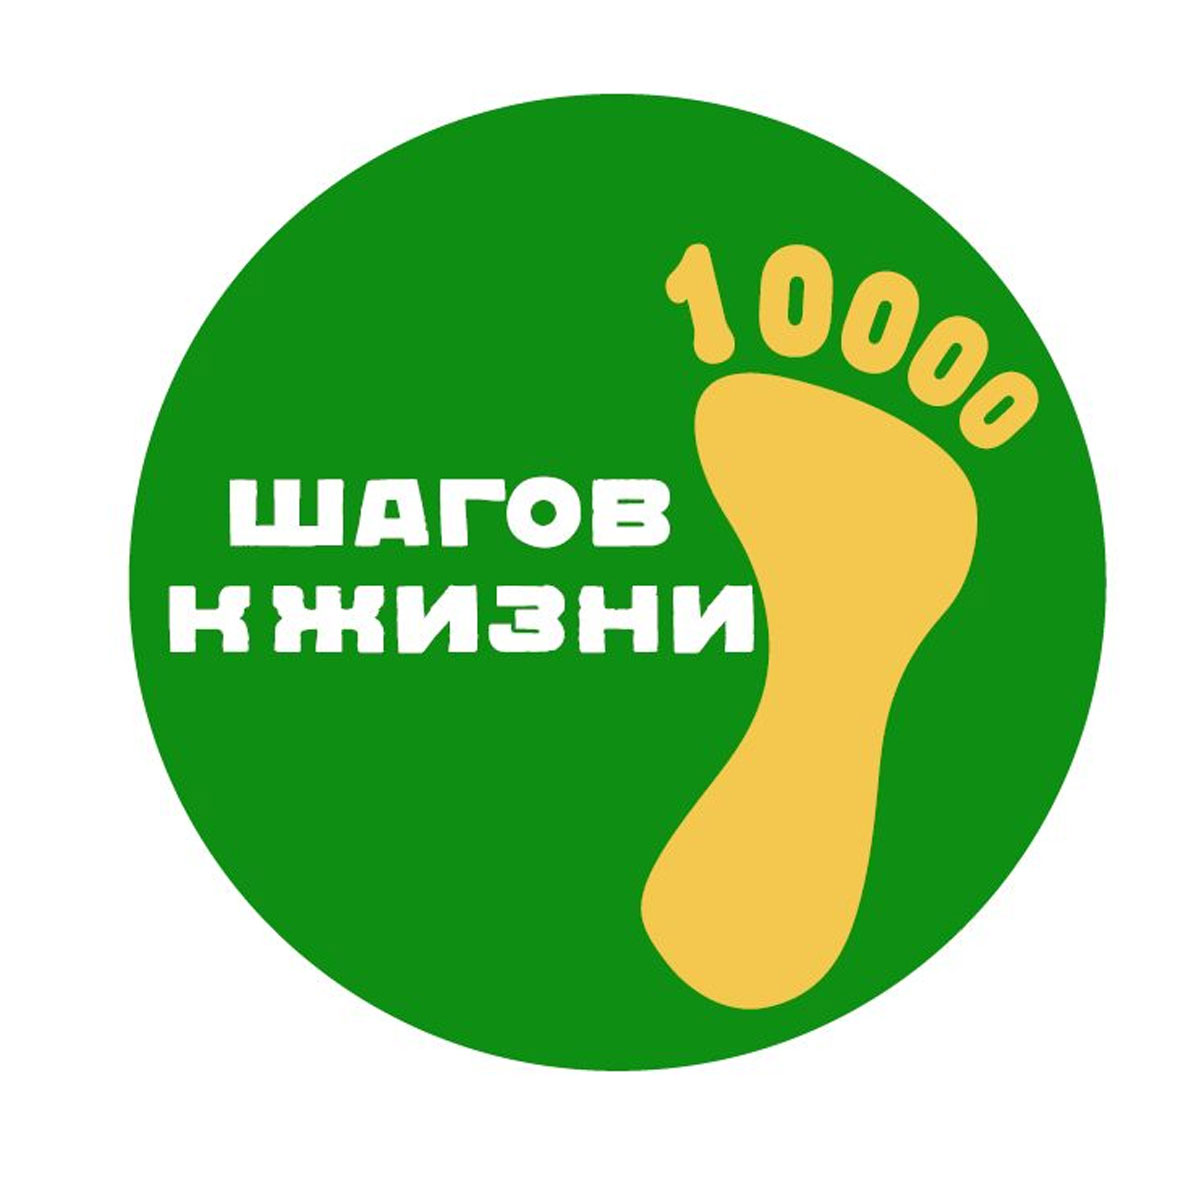 Кузнечан приглашают присоединиться ко  Всероссийской акции «10 000 шагов к жизни», приуроченной к Всемирному дню здоровья